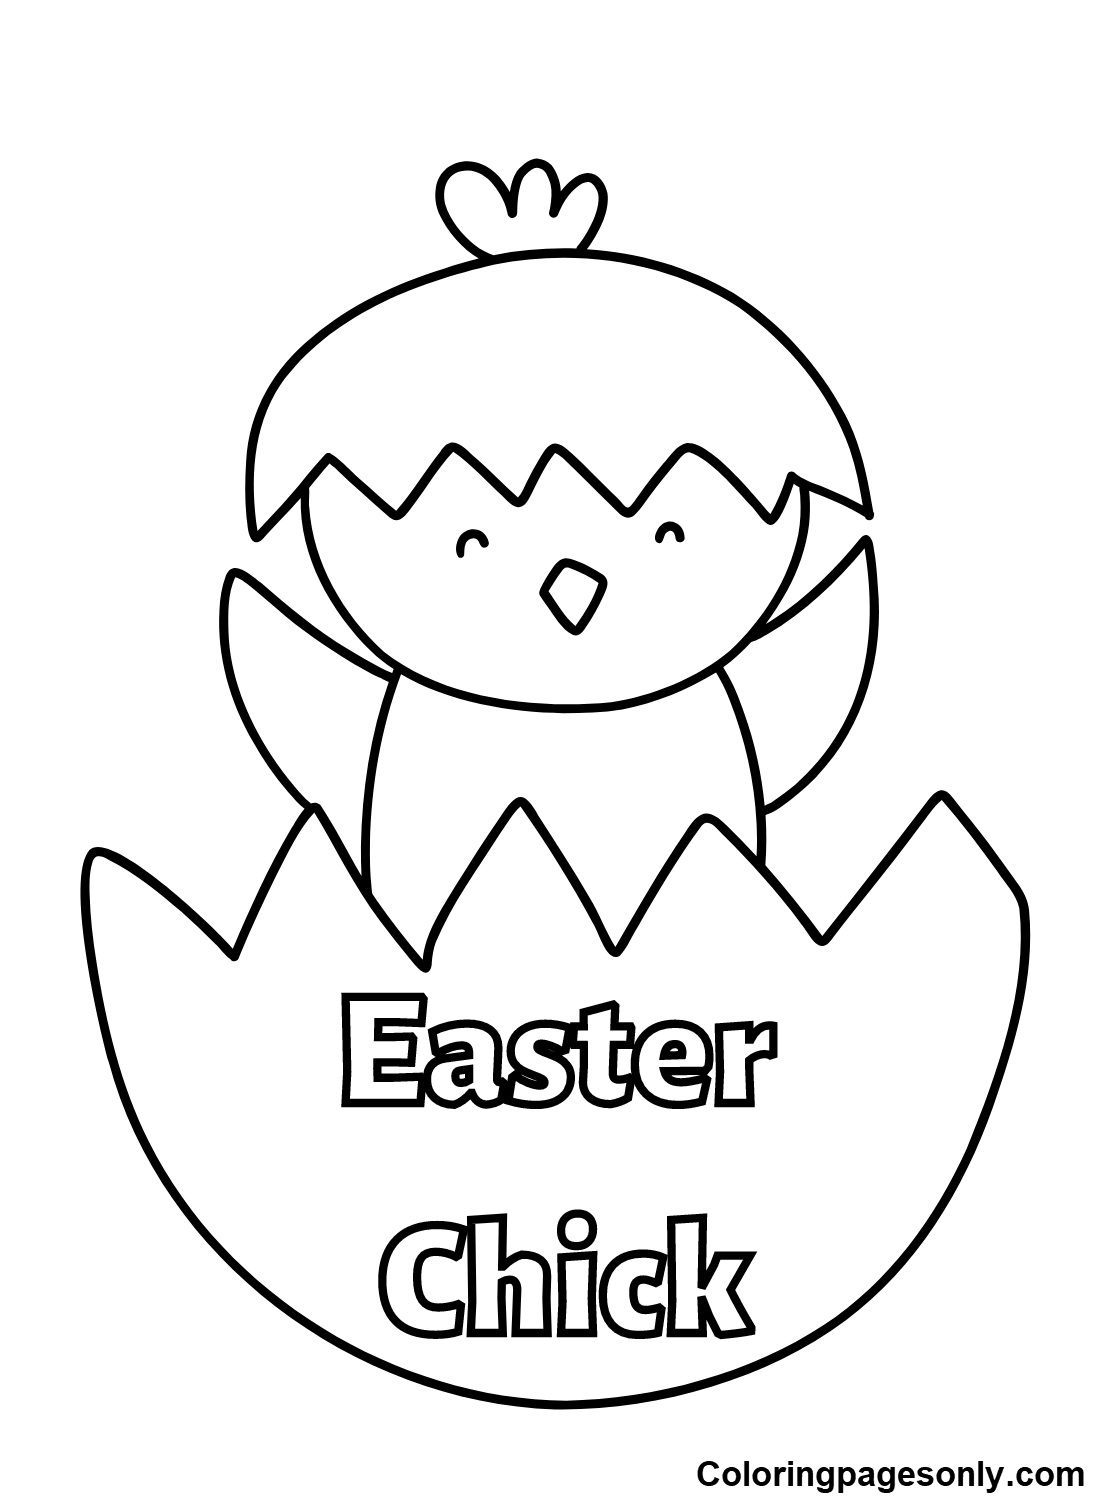 Chick Pascua Imágenes de Chick